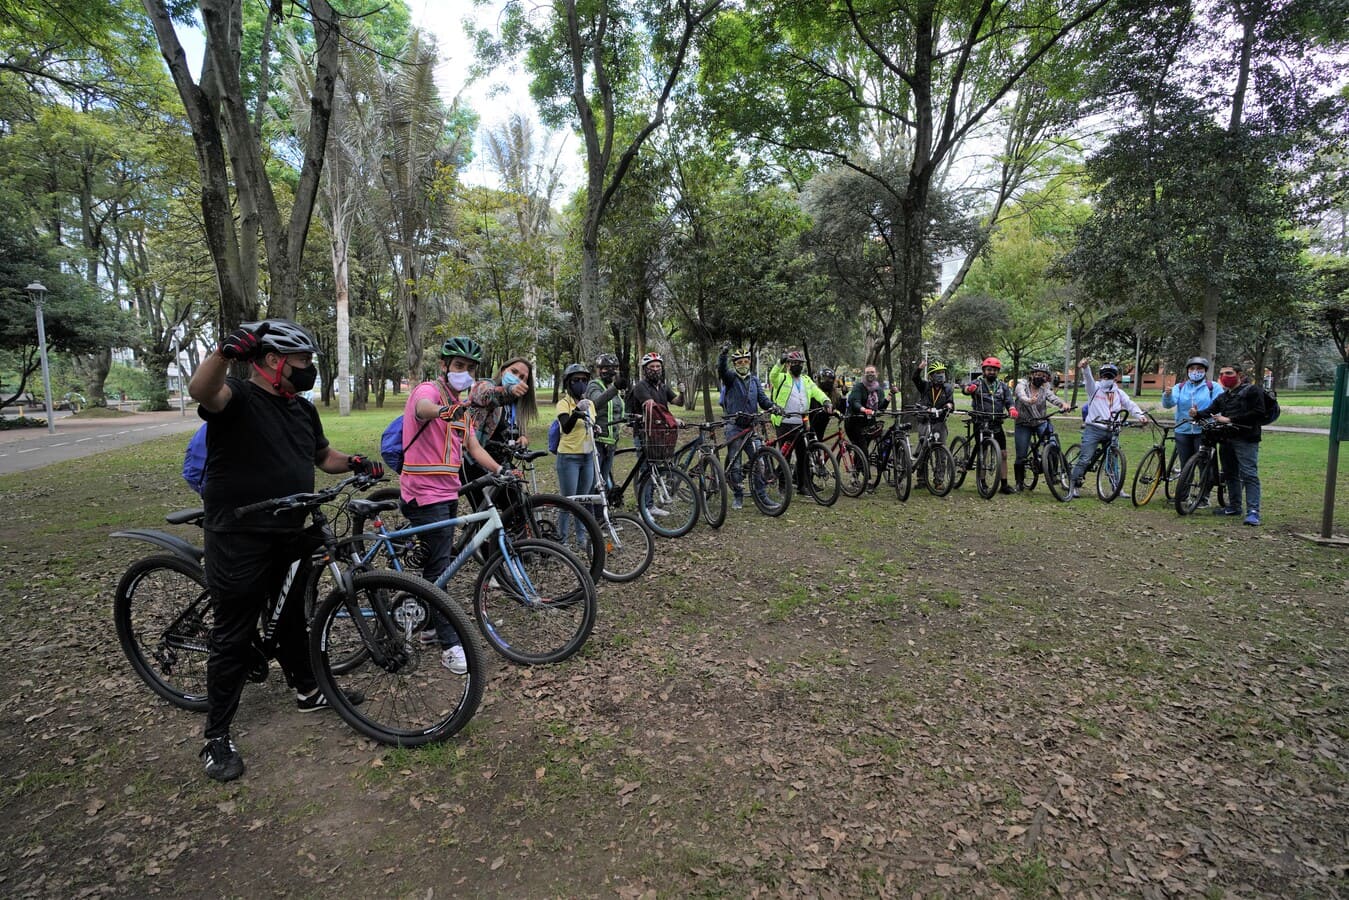 Recuerda que este jueves 1 de febrero es el Día sin carro y sin moto en Bogotá